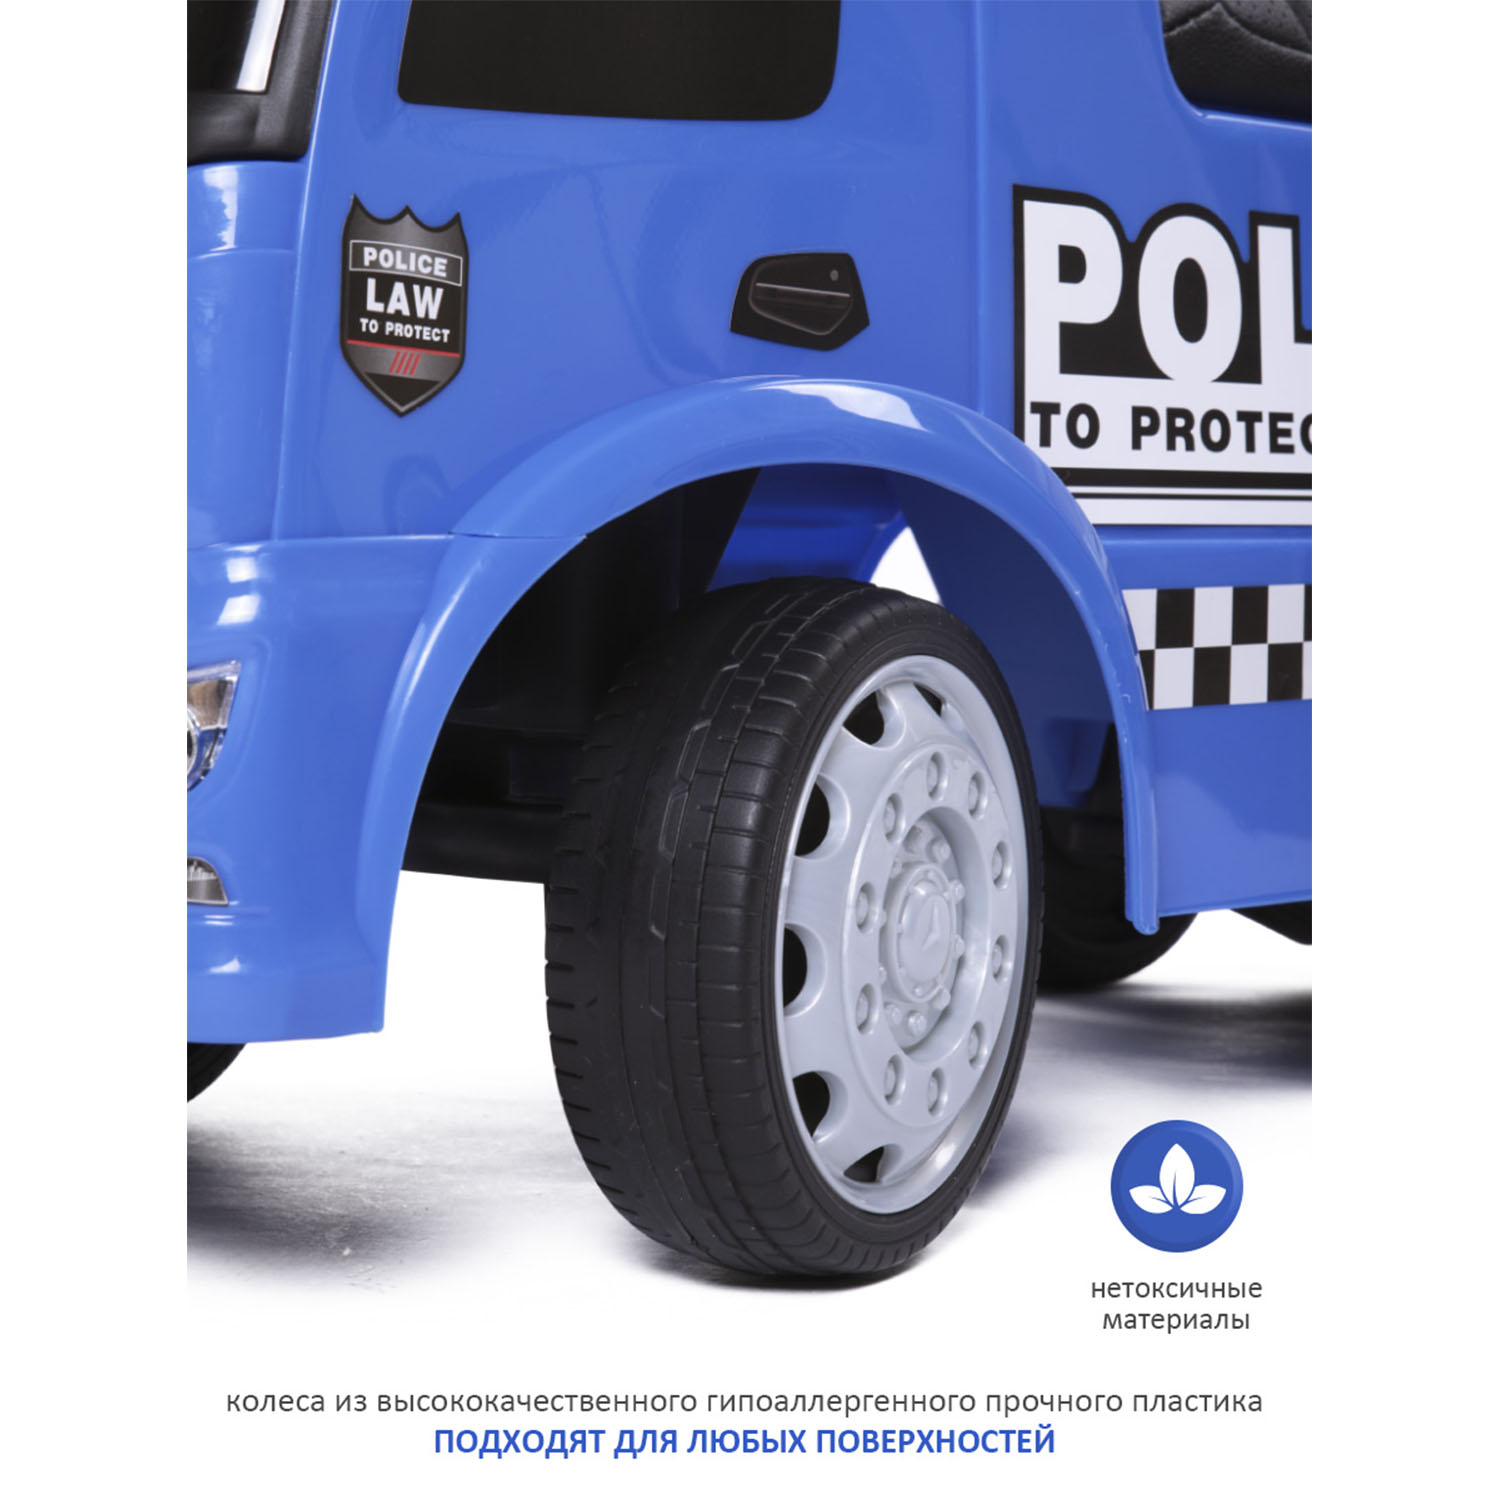 Каталка BabyCare Mercedes-Benz Antos Police кожаное сиденье синий - фото 8